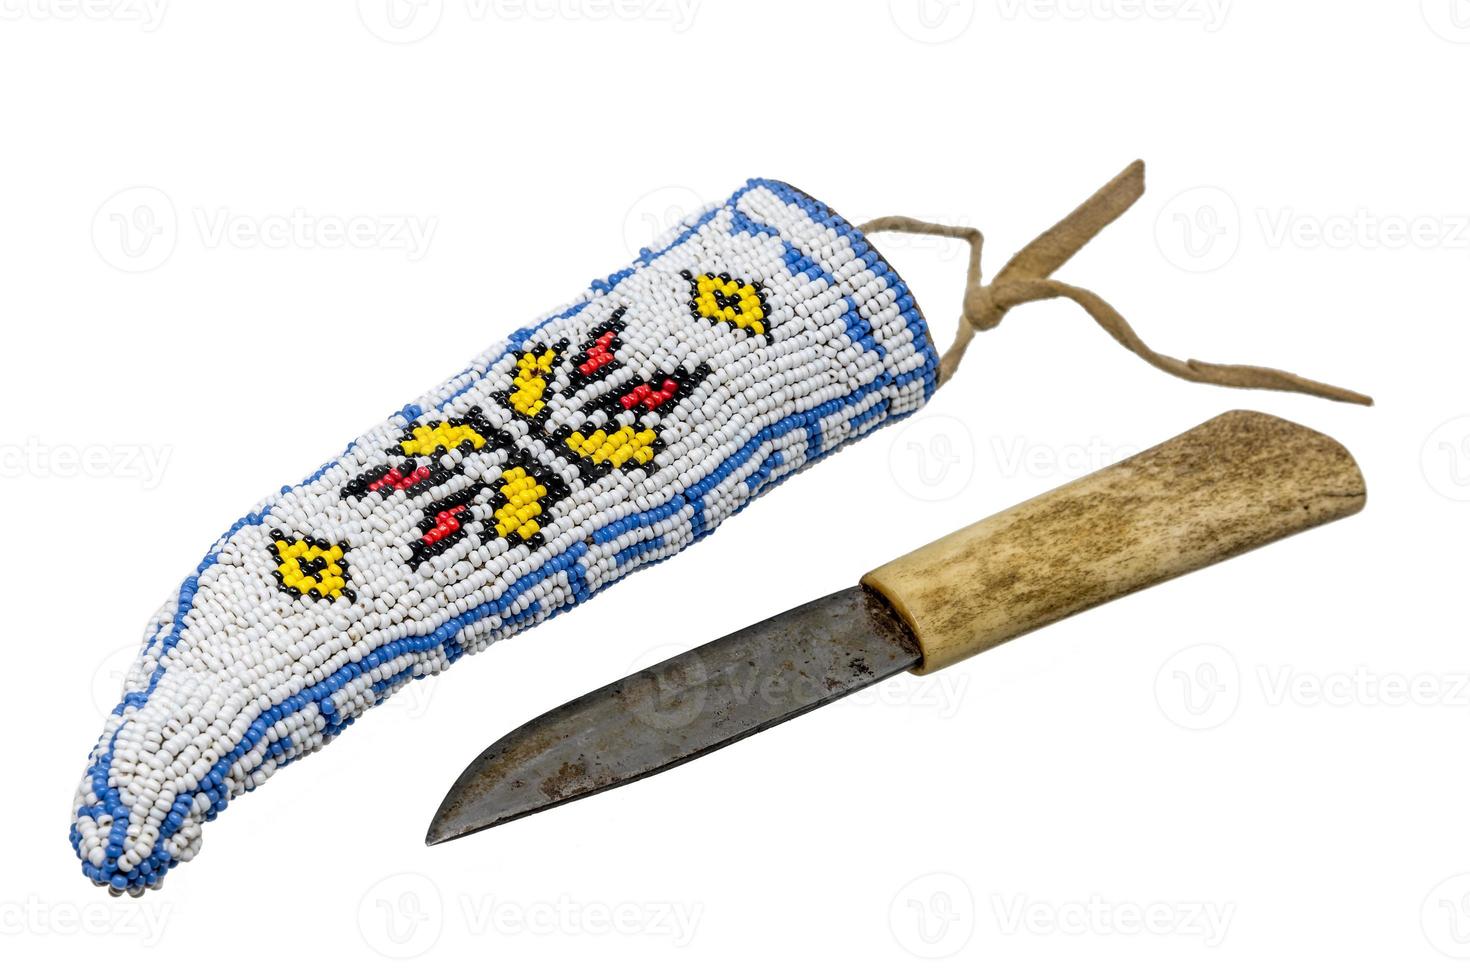 faca indiana com cabo de osso em aljava bordada com miçangas foto